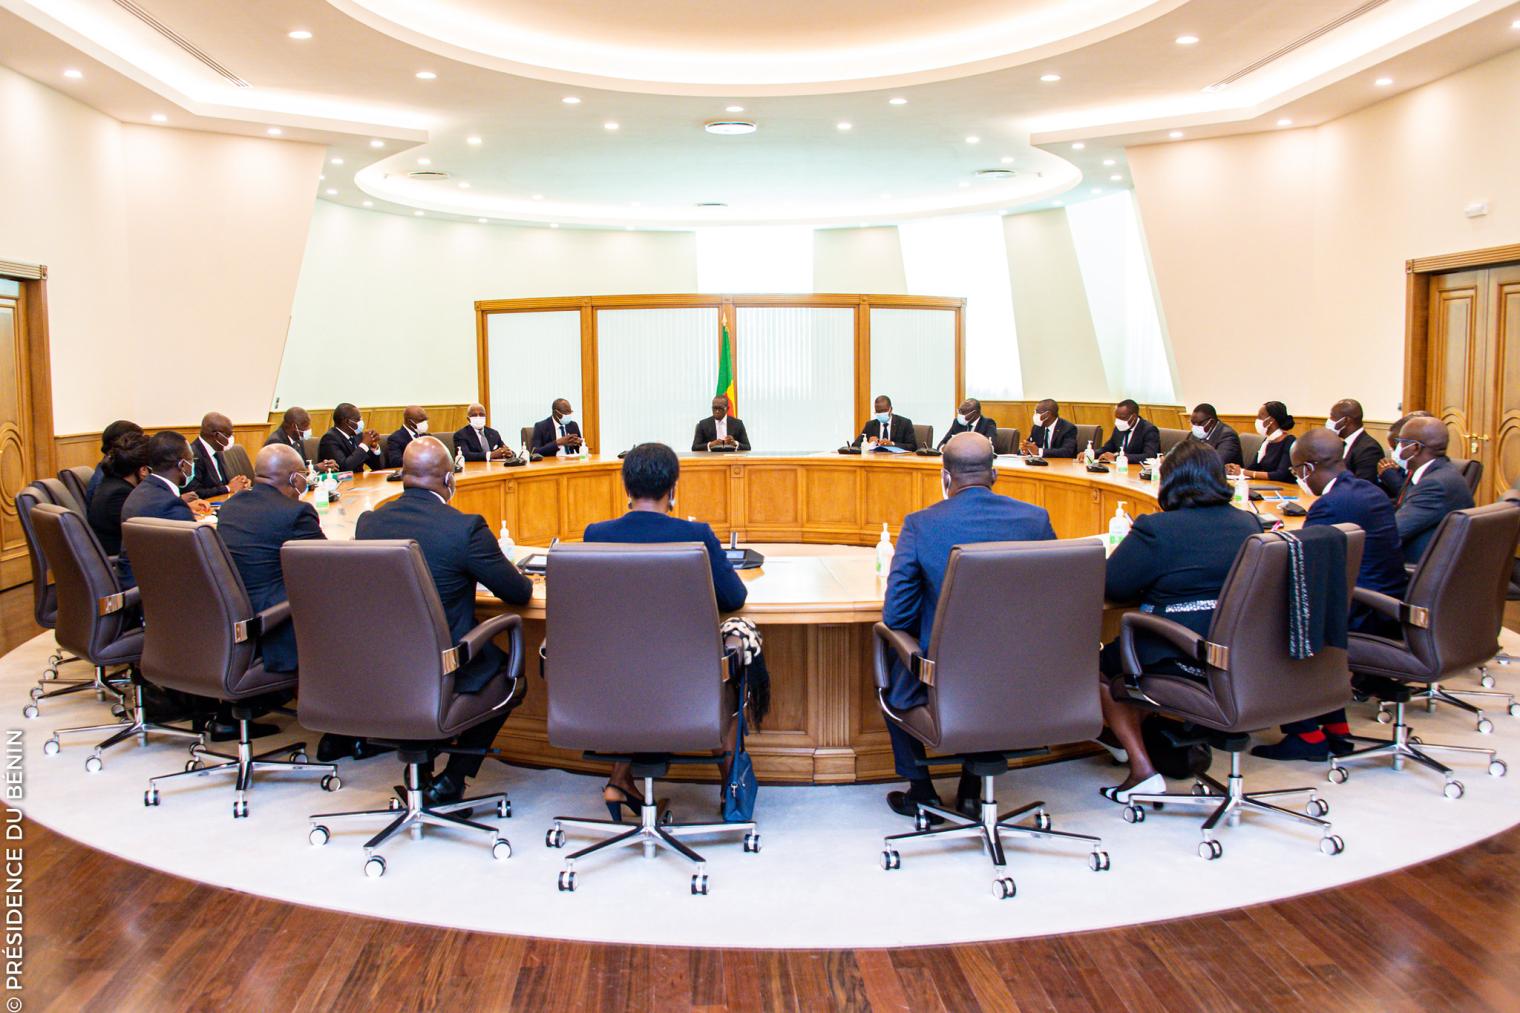 Bénin – Conseil des ministres : compte rendu de la session du 15 mars 2023